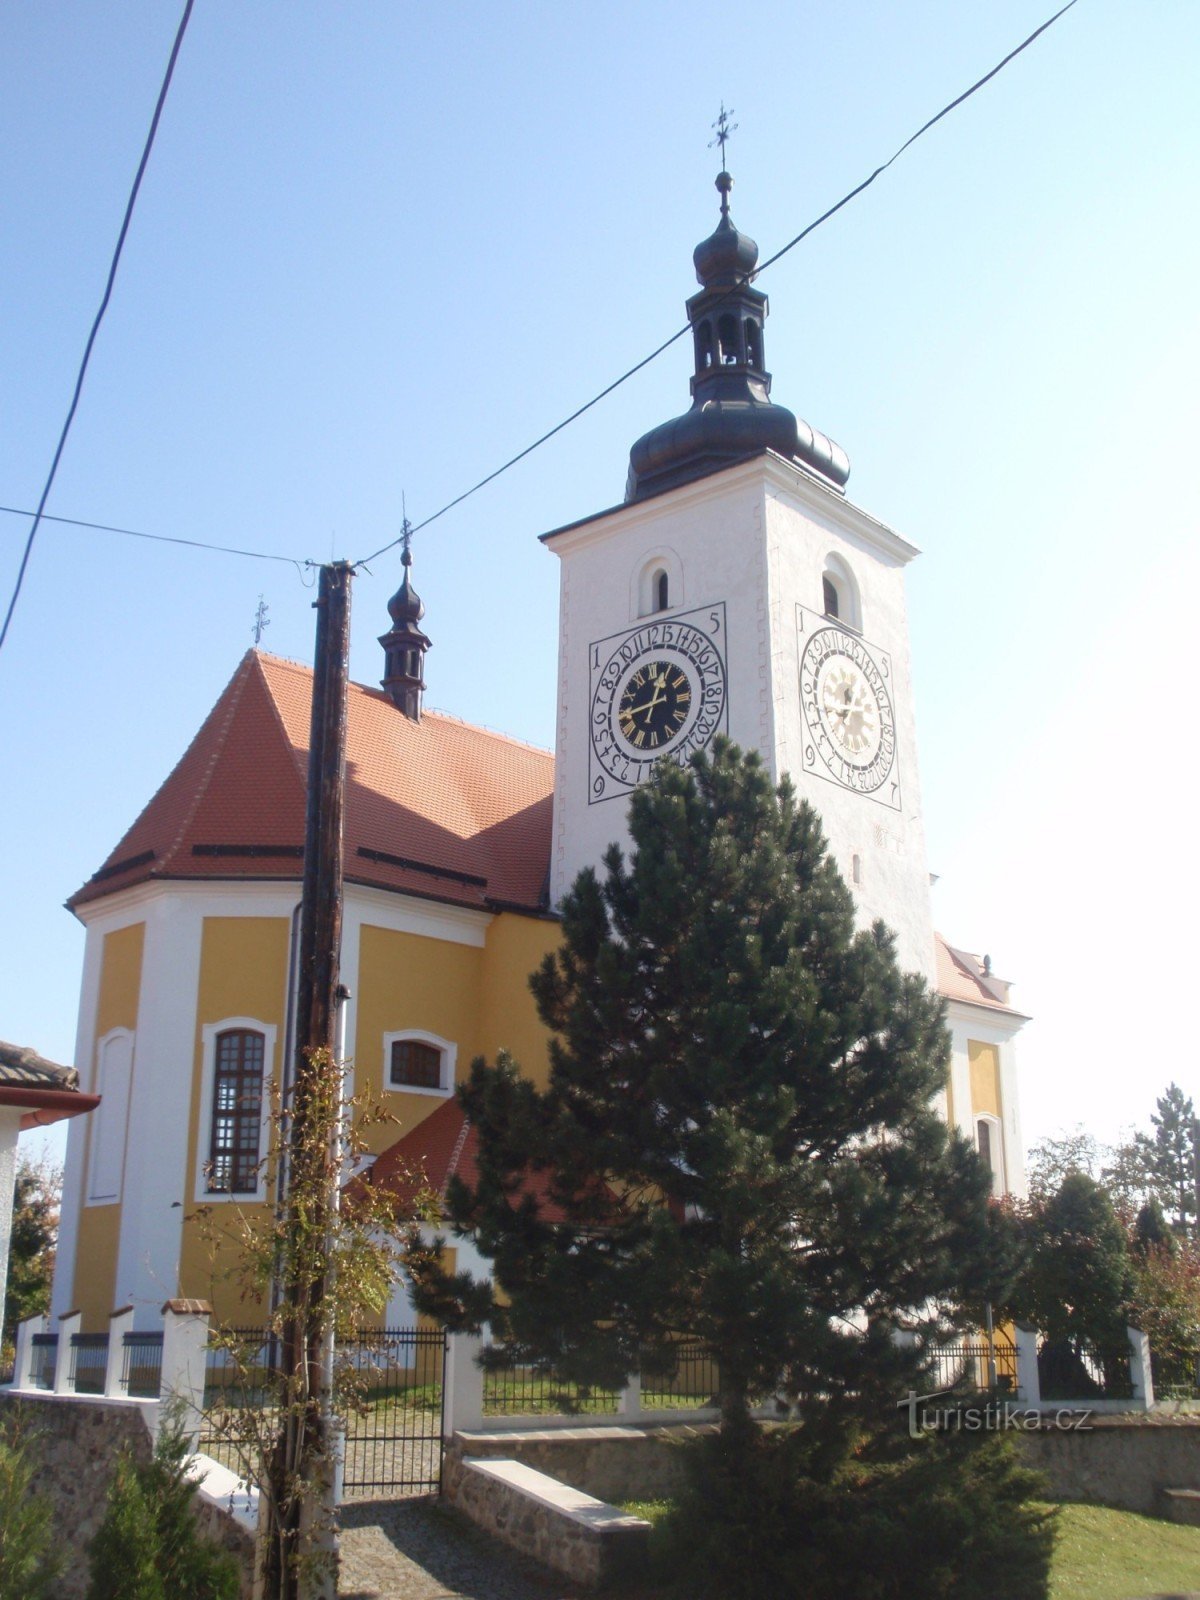 Orașul Stařeč lângă Třebíč